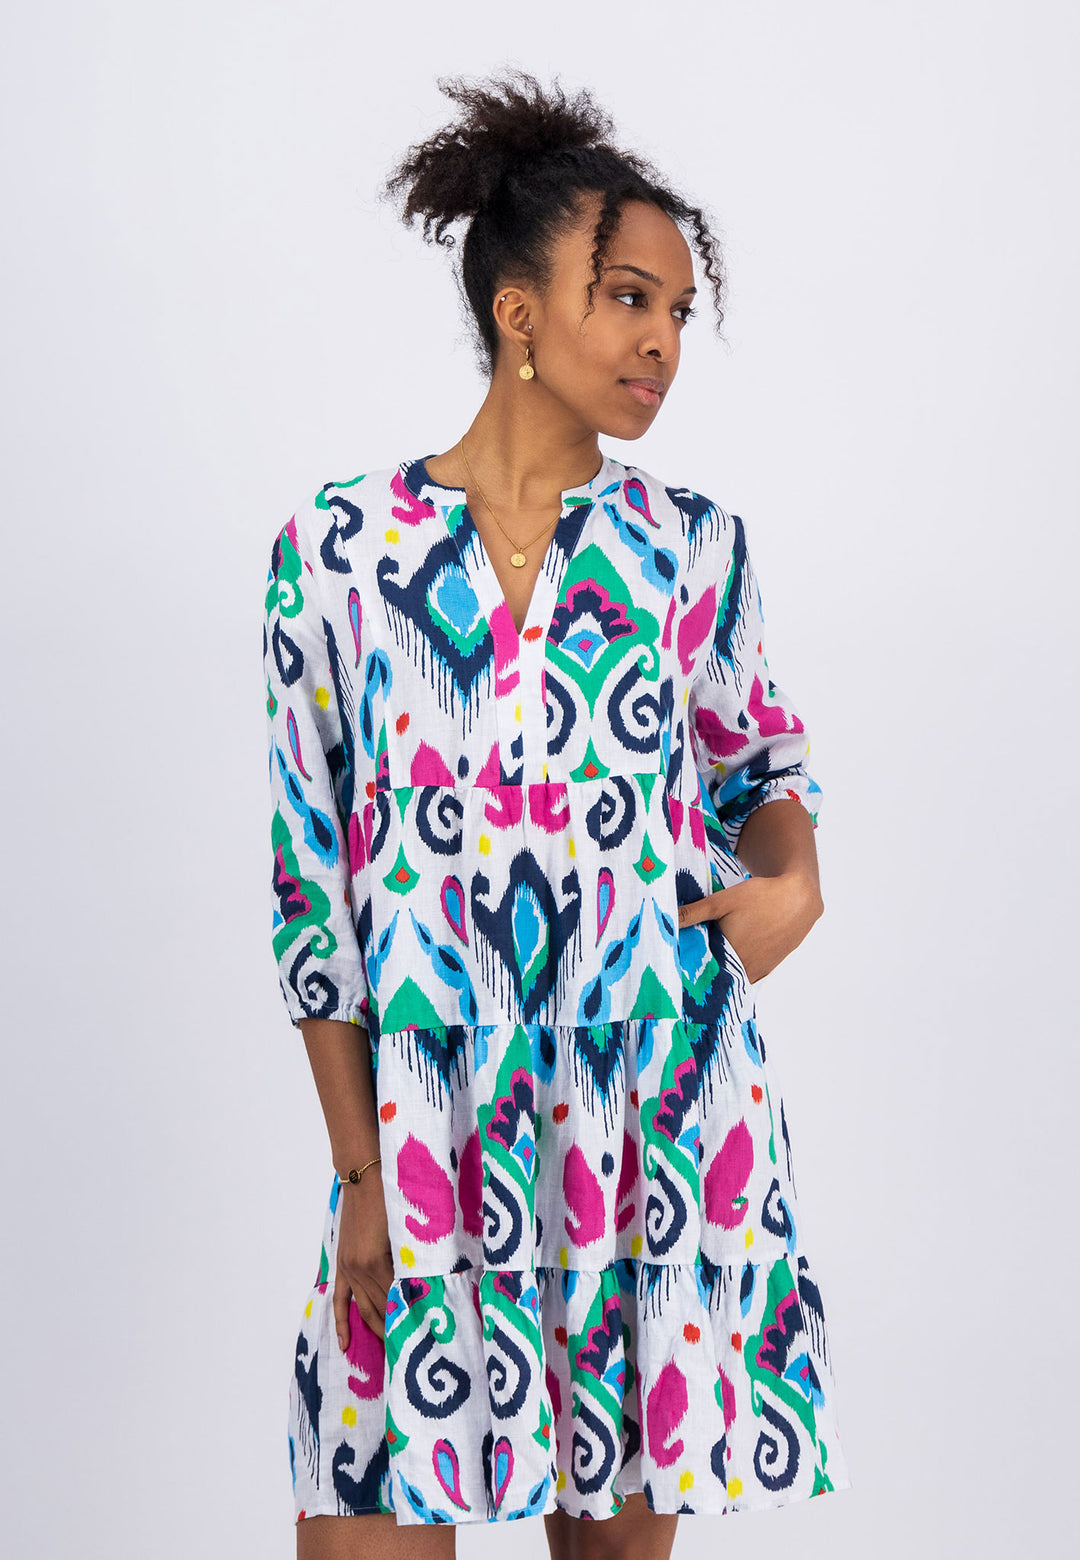 Offizieller FYNCH-HATTON print | Online Linen with colourful Shop – dress